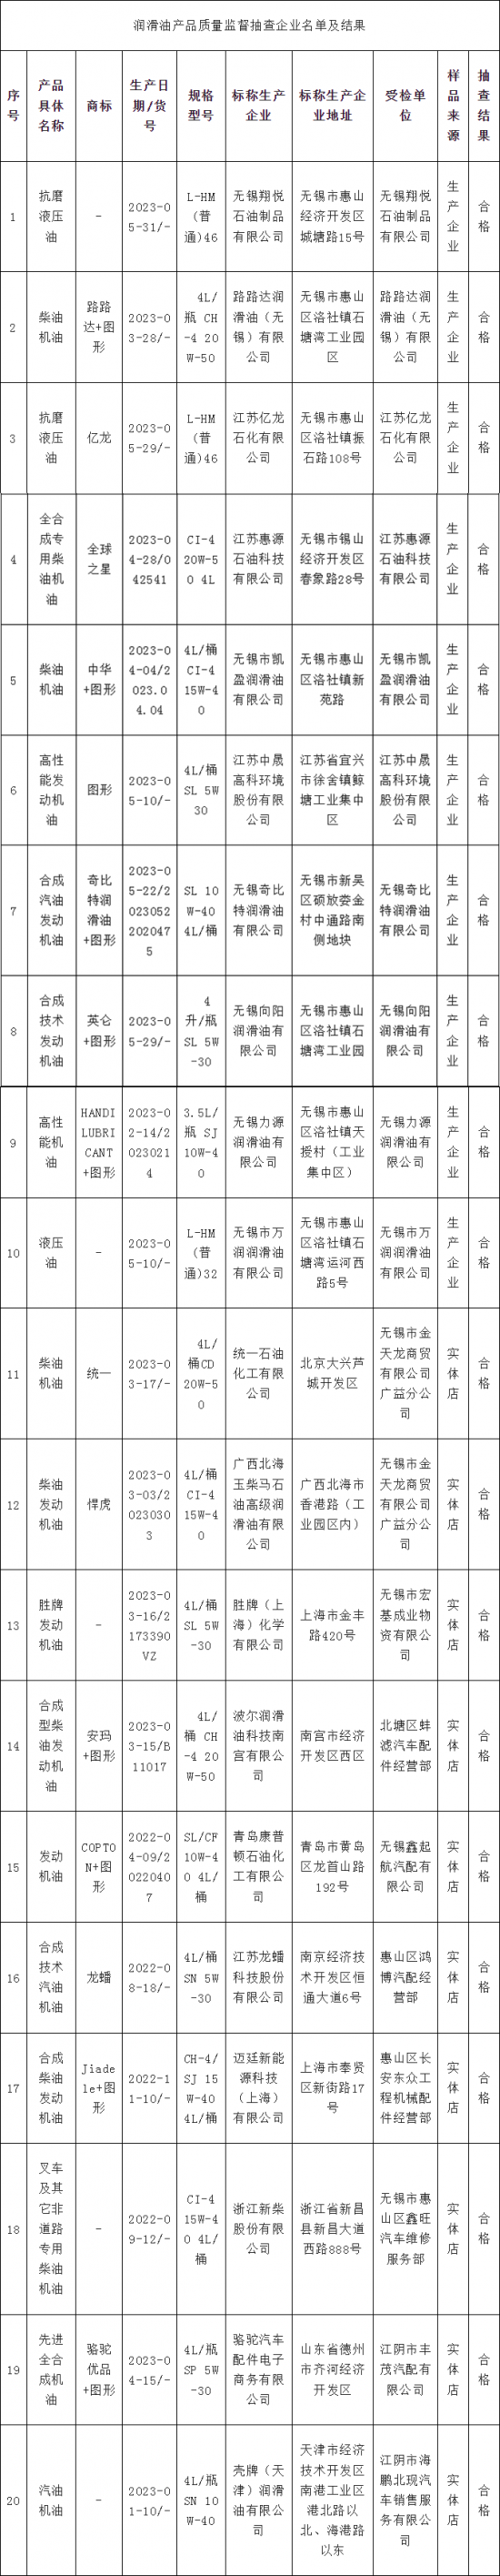 江苏省无锡市抽查20批次润滑油产品结果公布